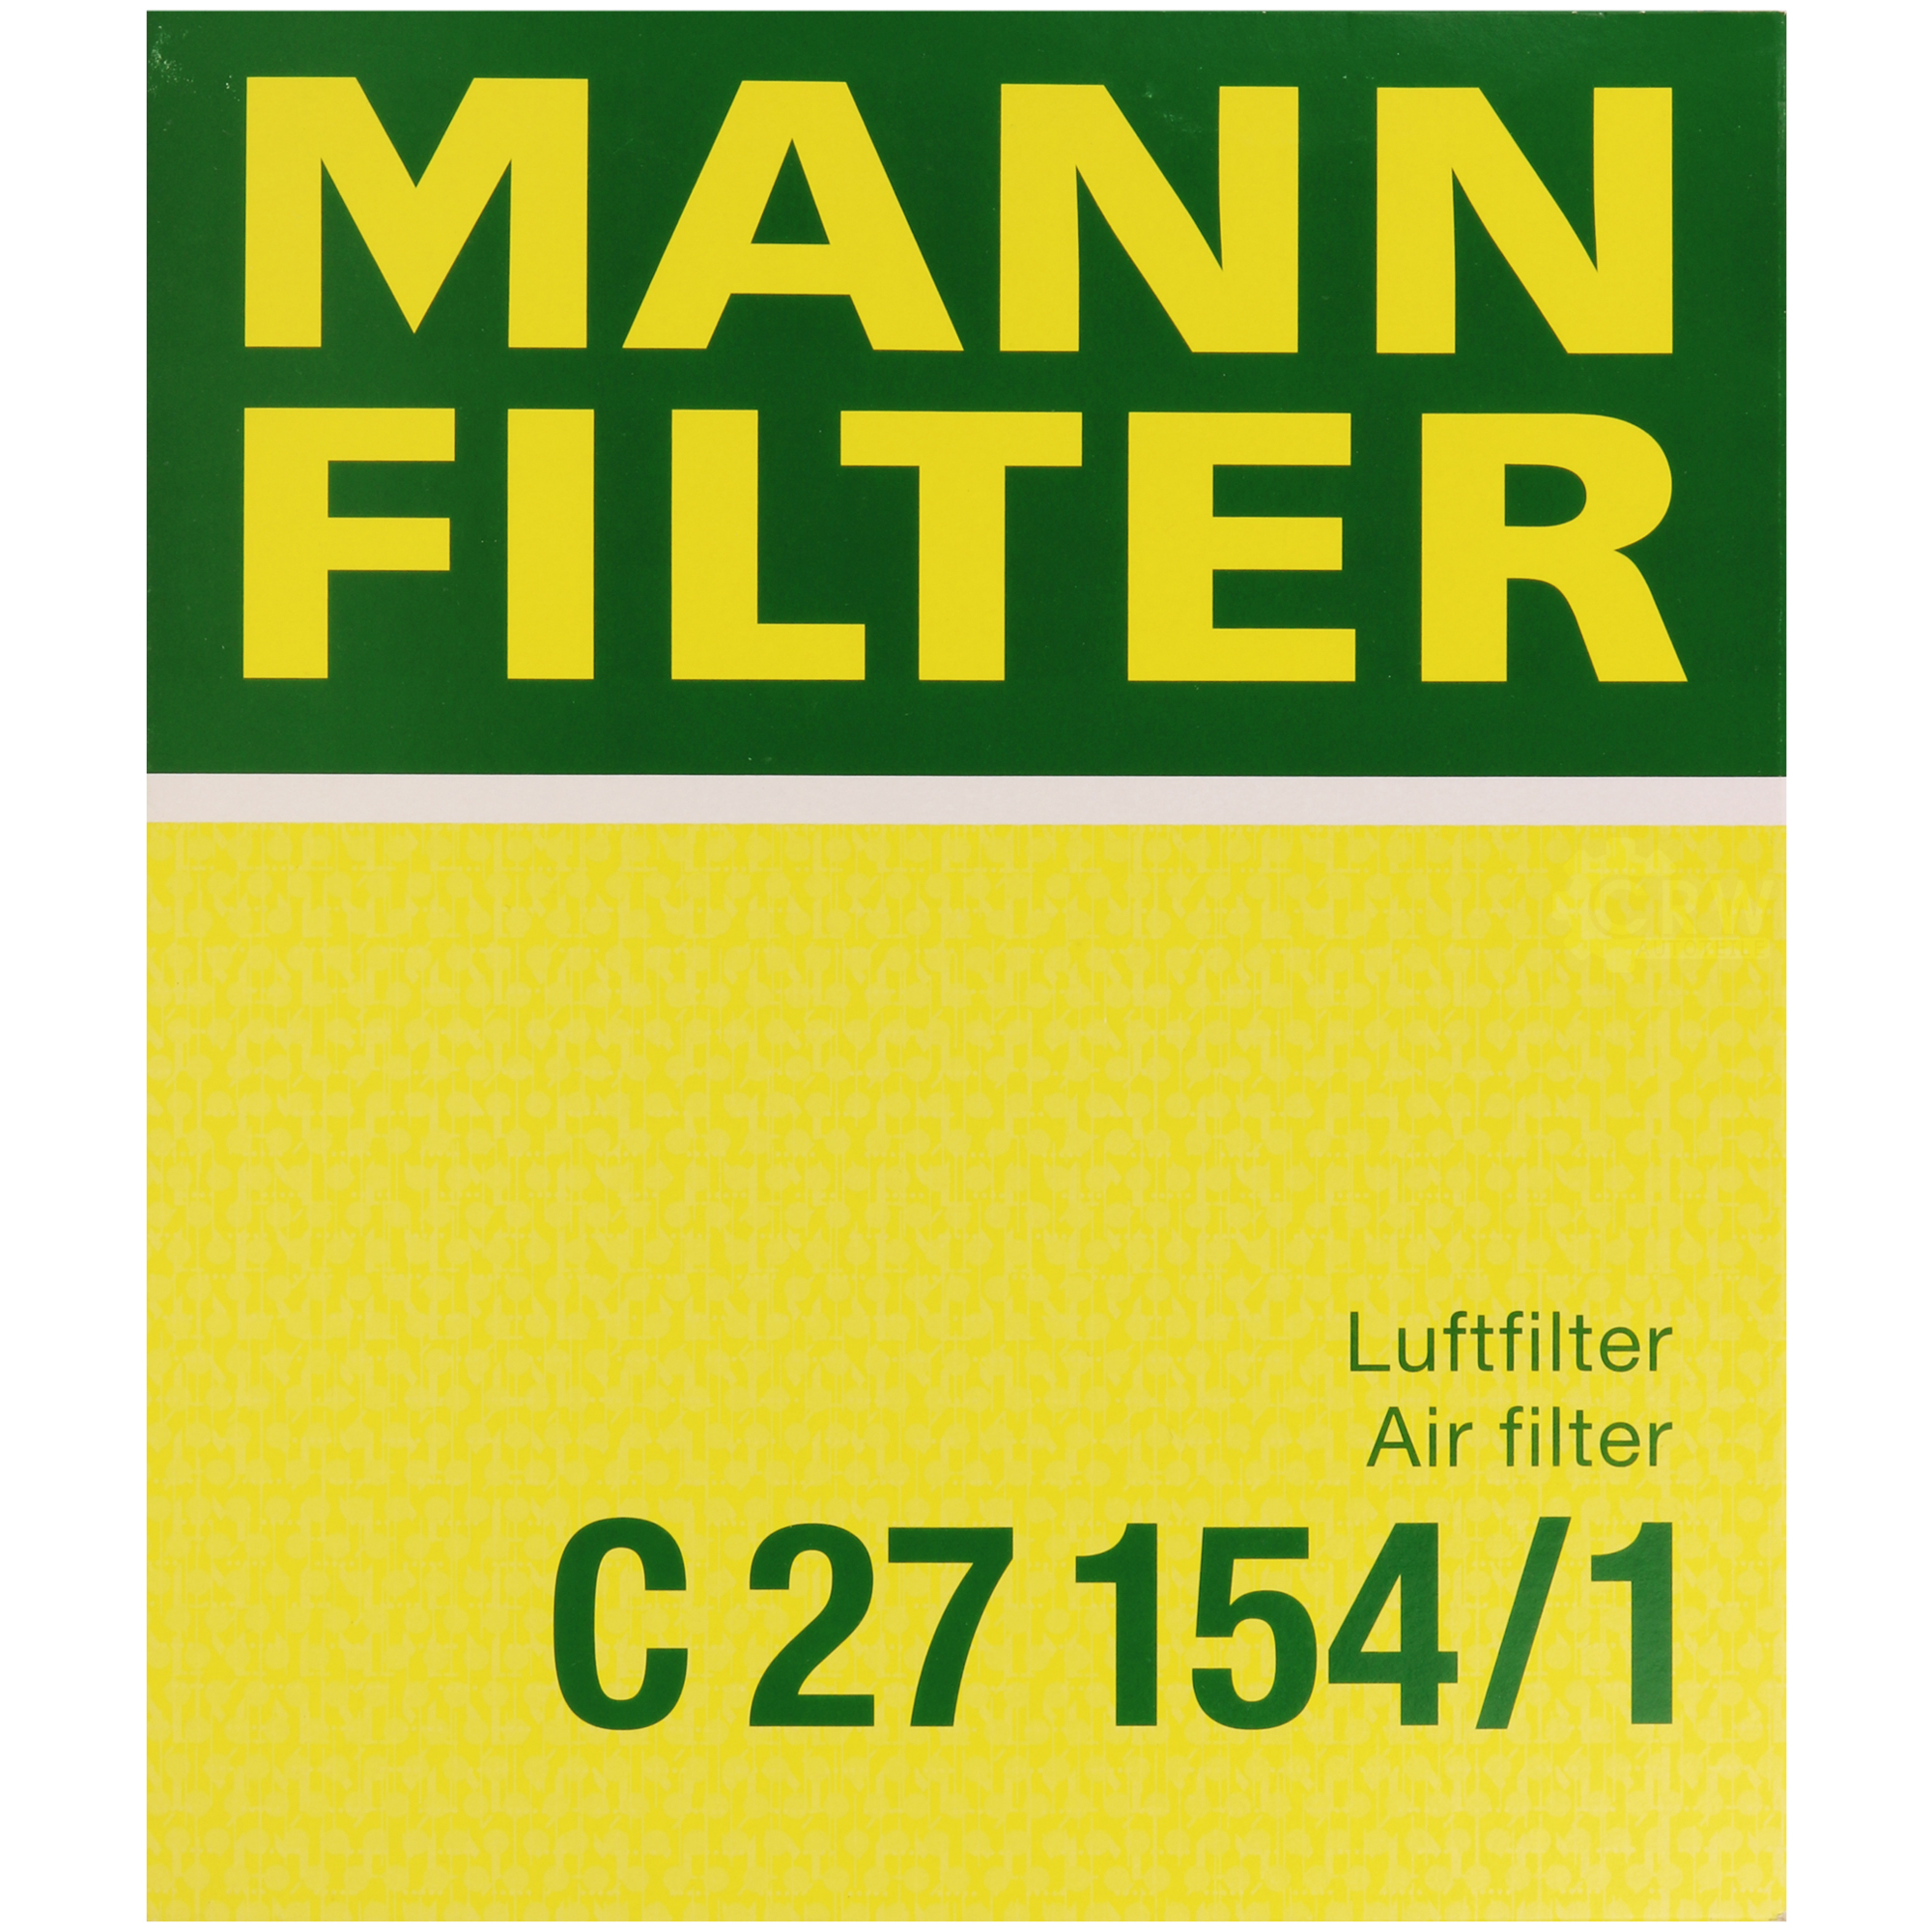 MANN-FILTER Luftfilter für VW Golf III 1H1 1.8 1.6 1E7 2.0